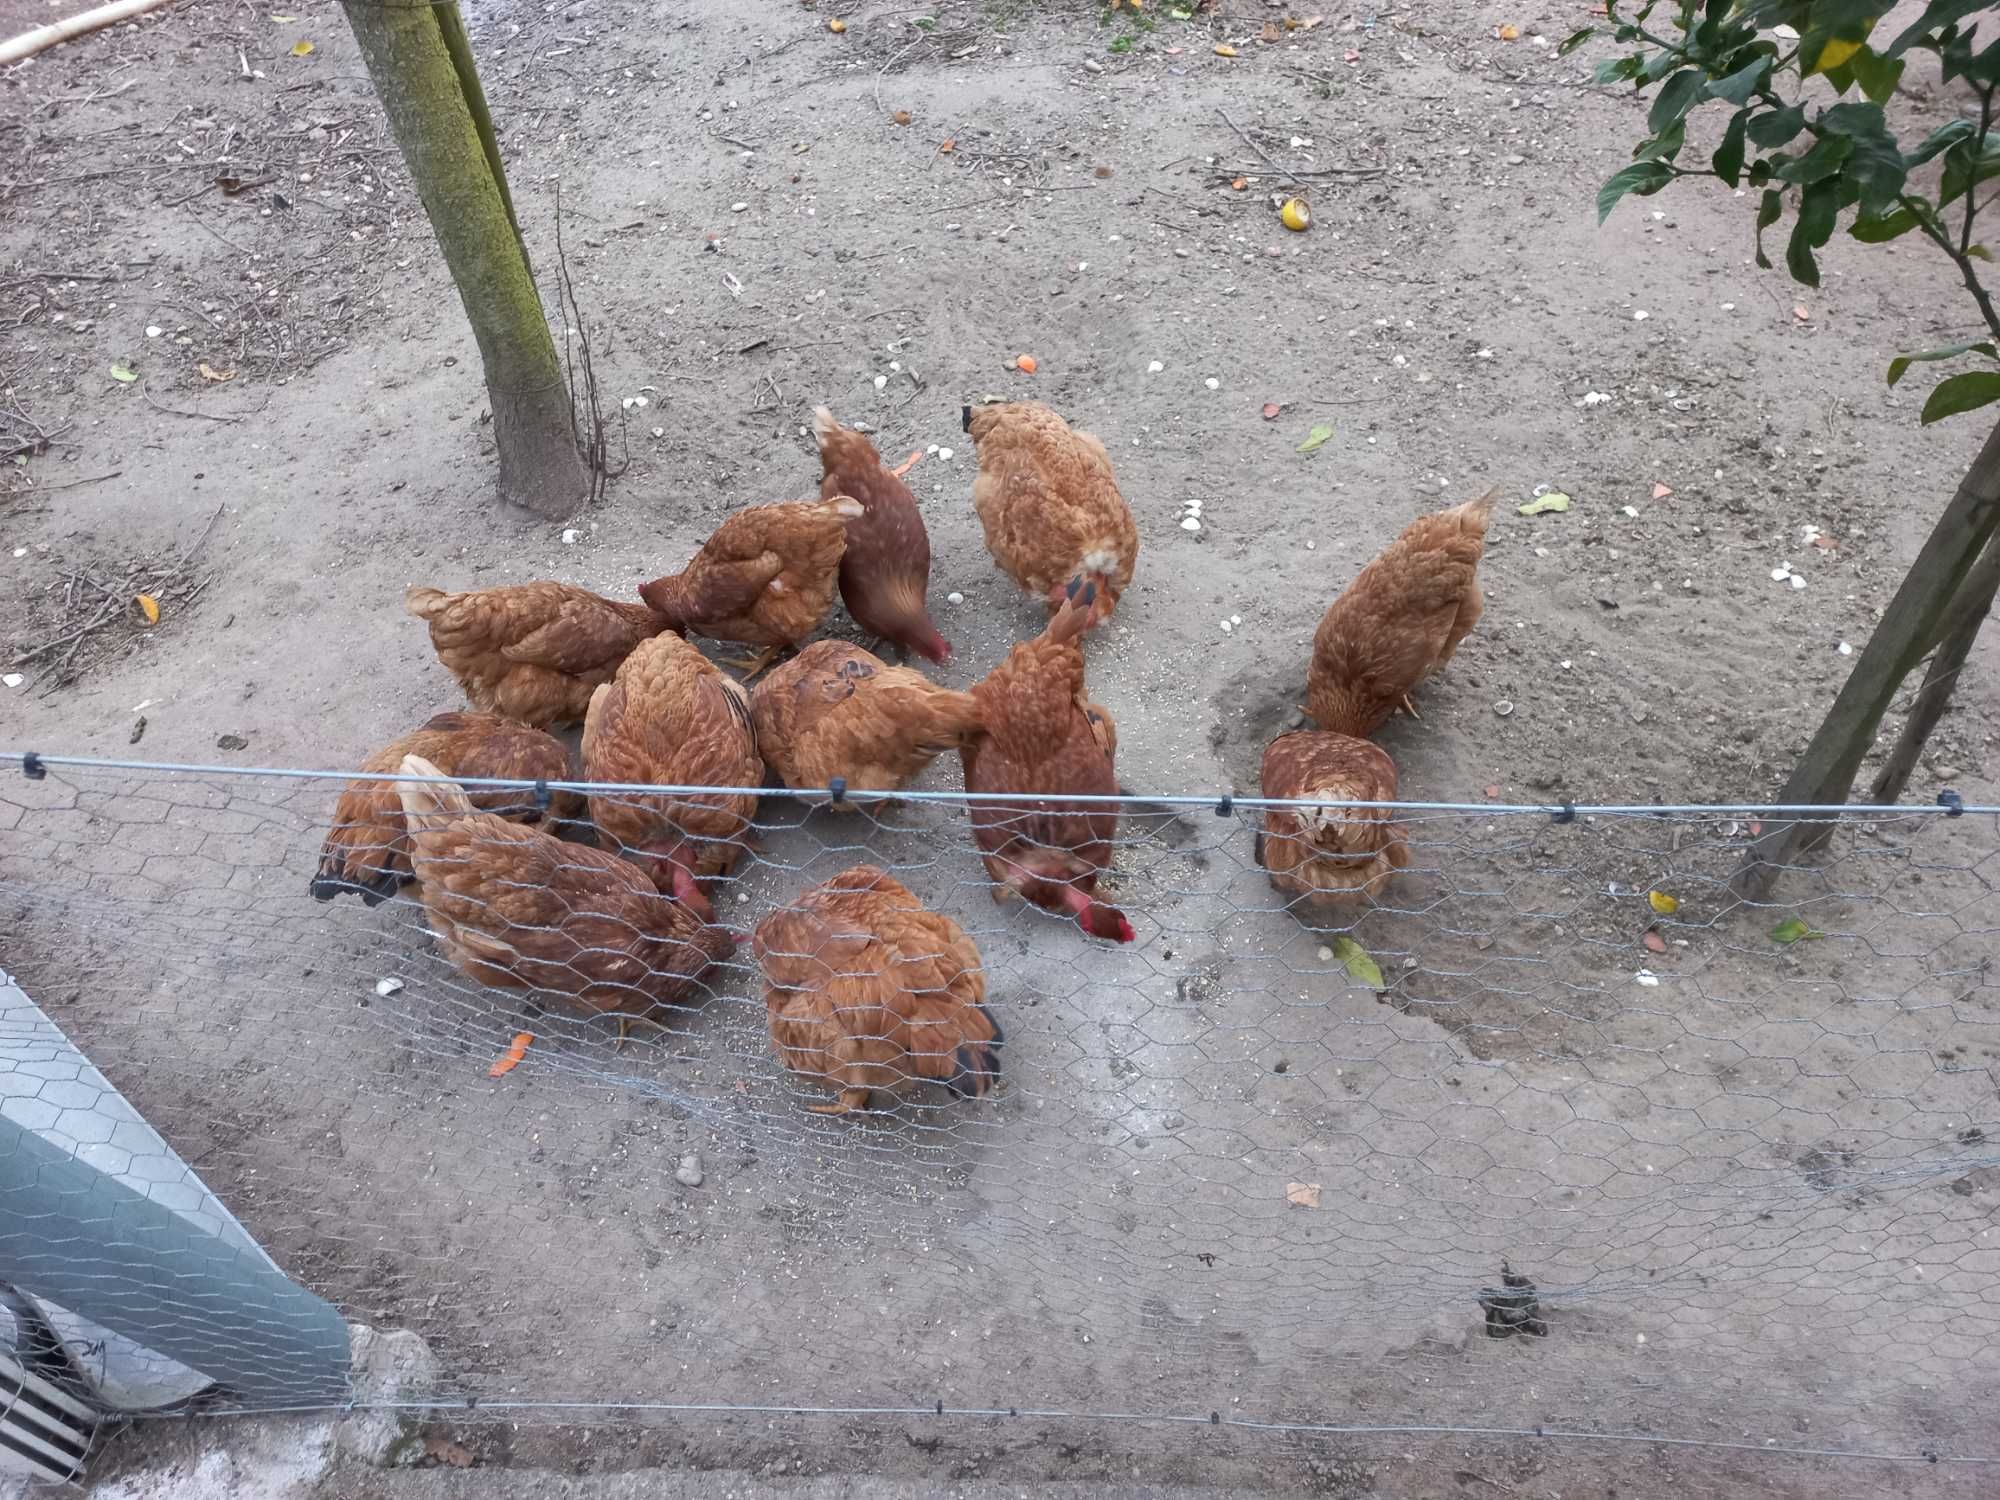 Vendo ovos caseiros de galinhas criadas ao ar livre.